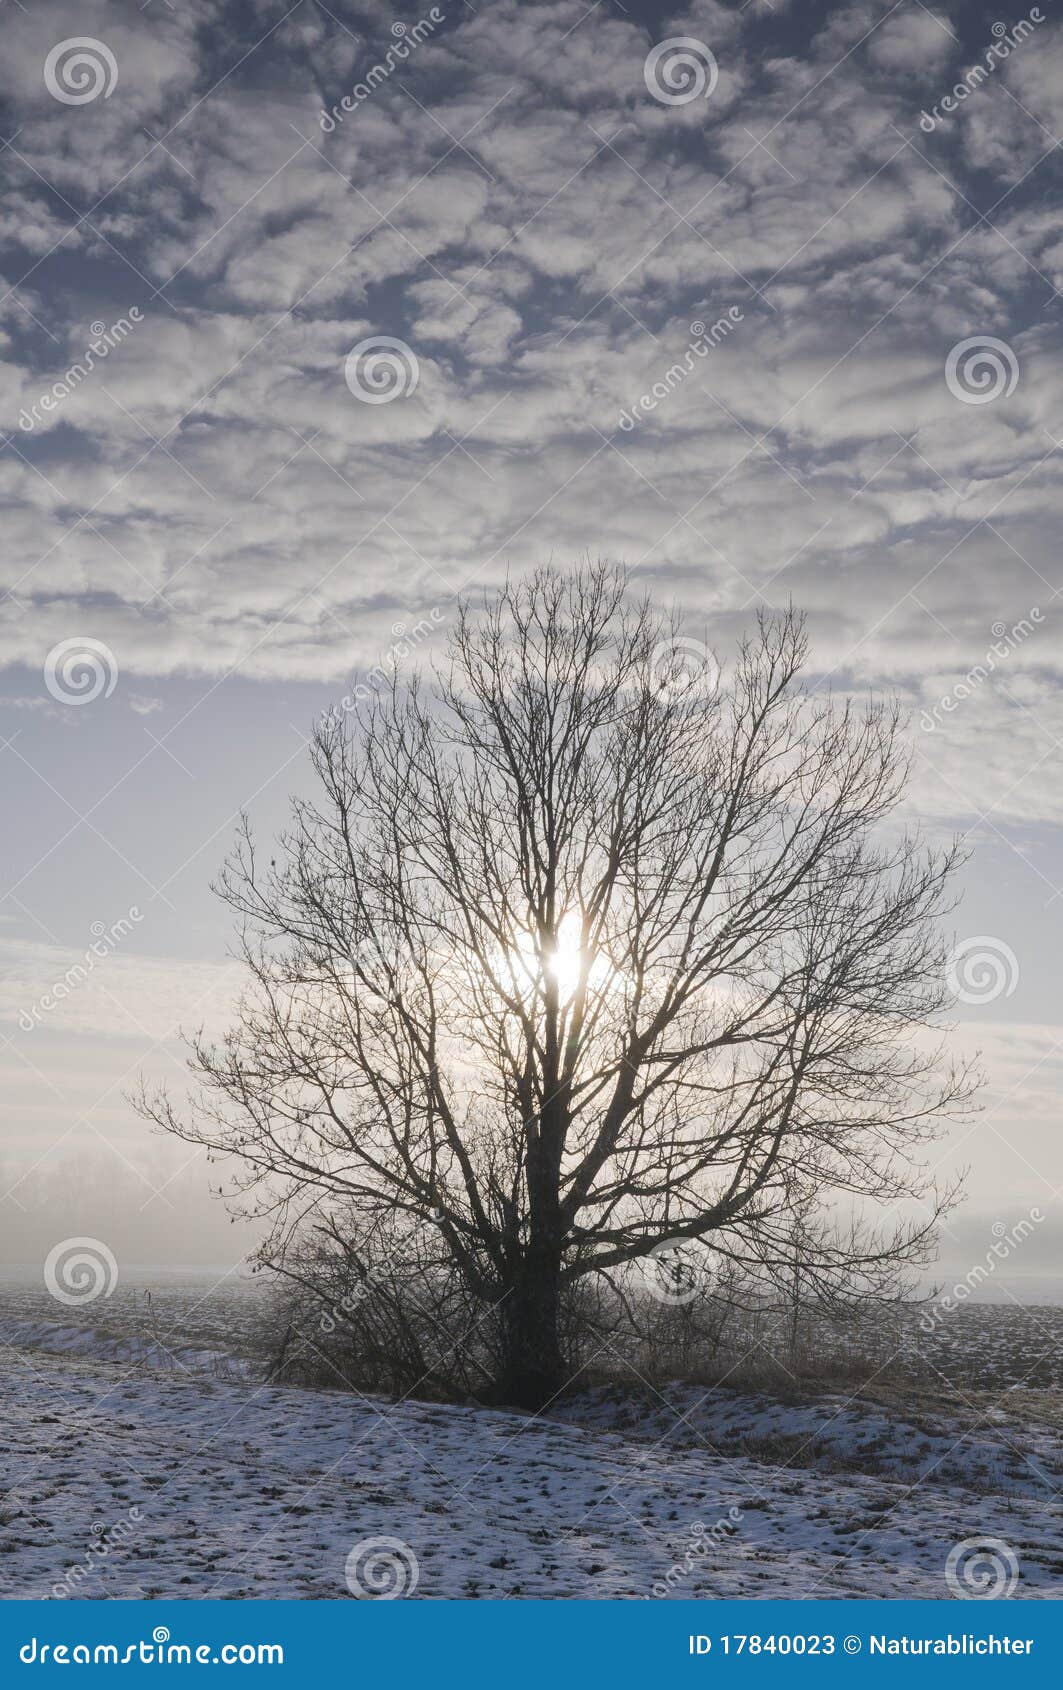 tree in wintry landscape